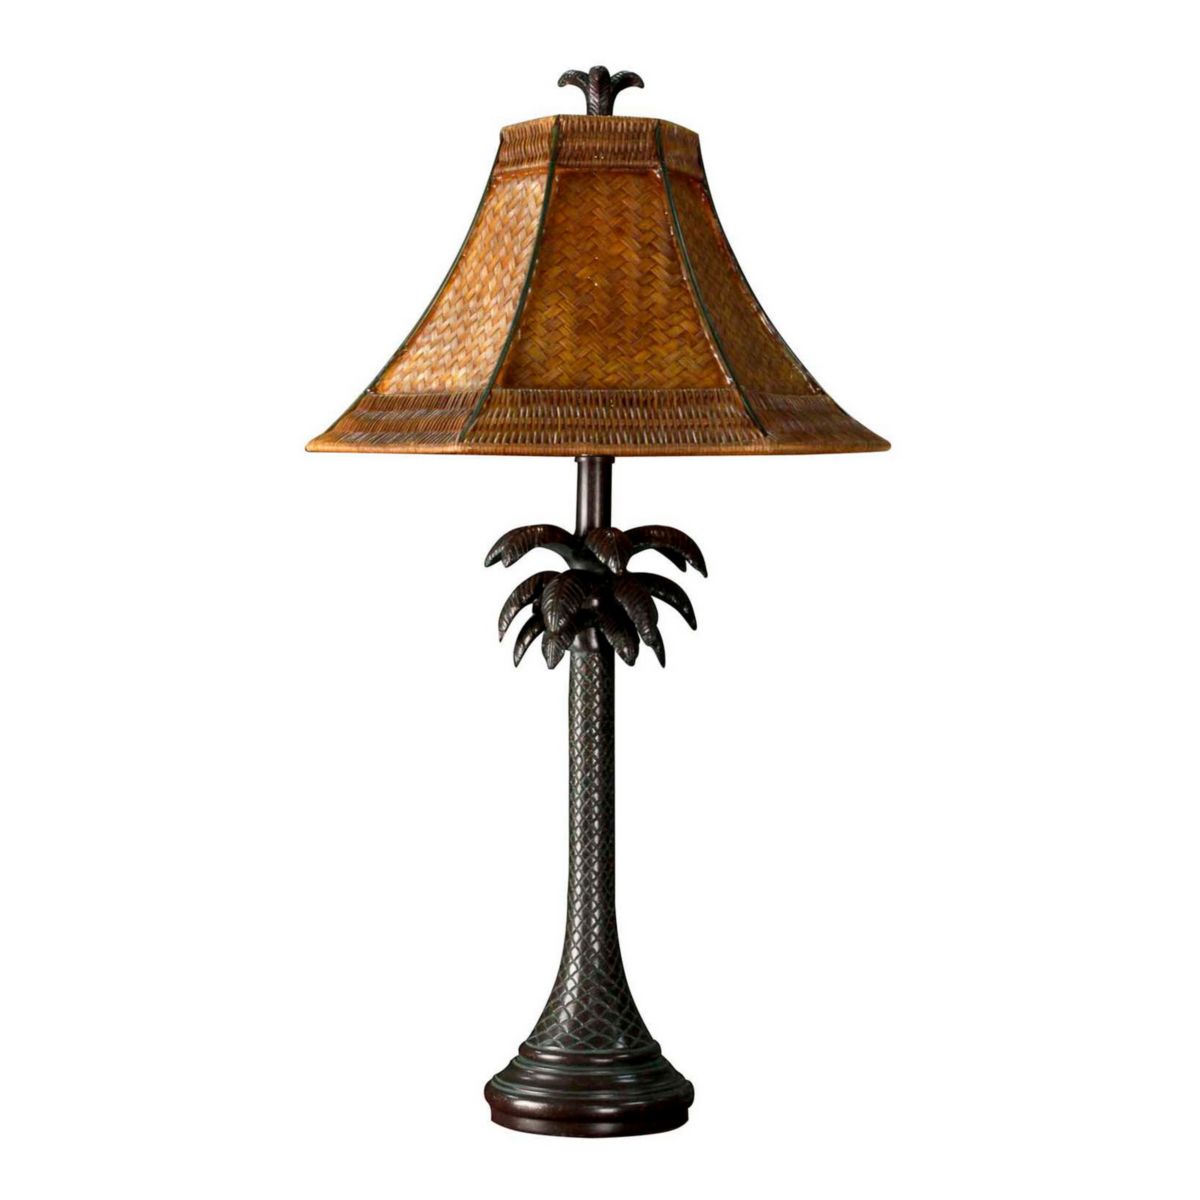 Настольная лампа French Verdi, темно-коричневая отделка и абажур из плетеного ротанга коричневого цвета Unbranded